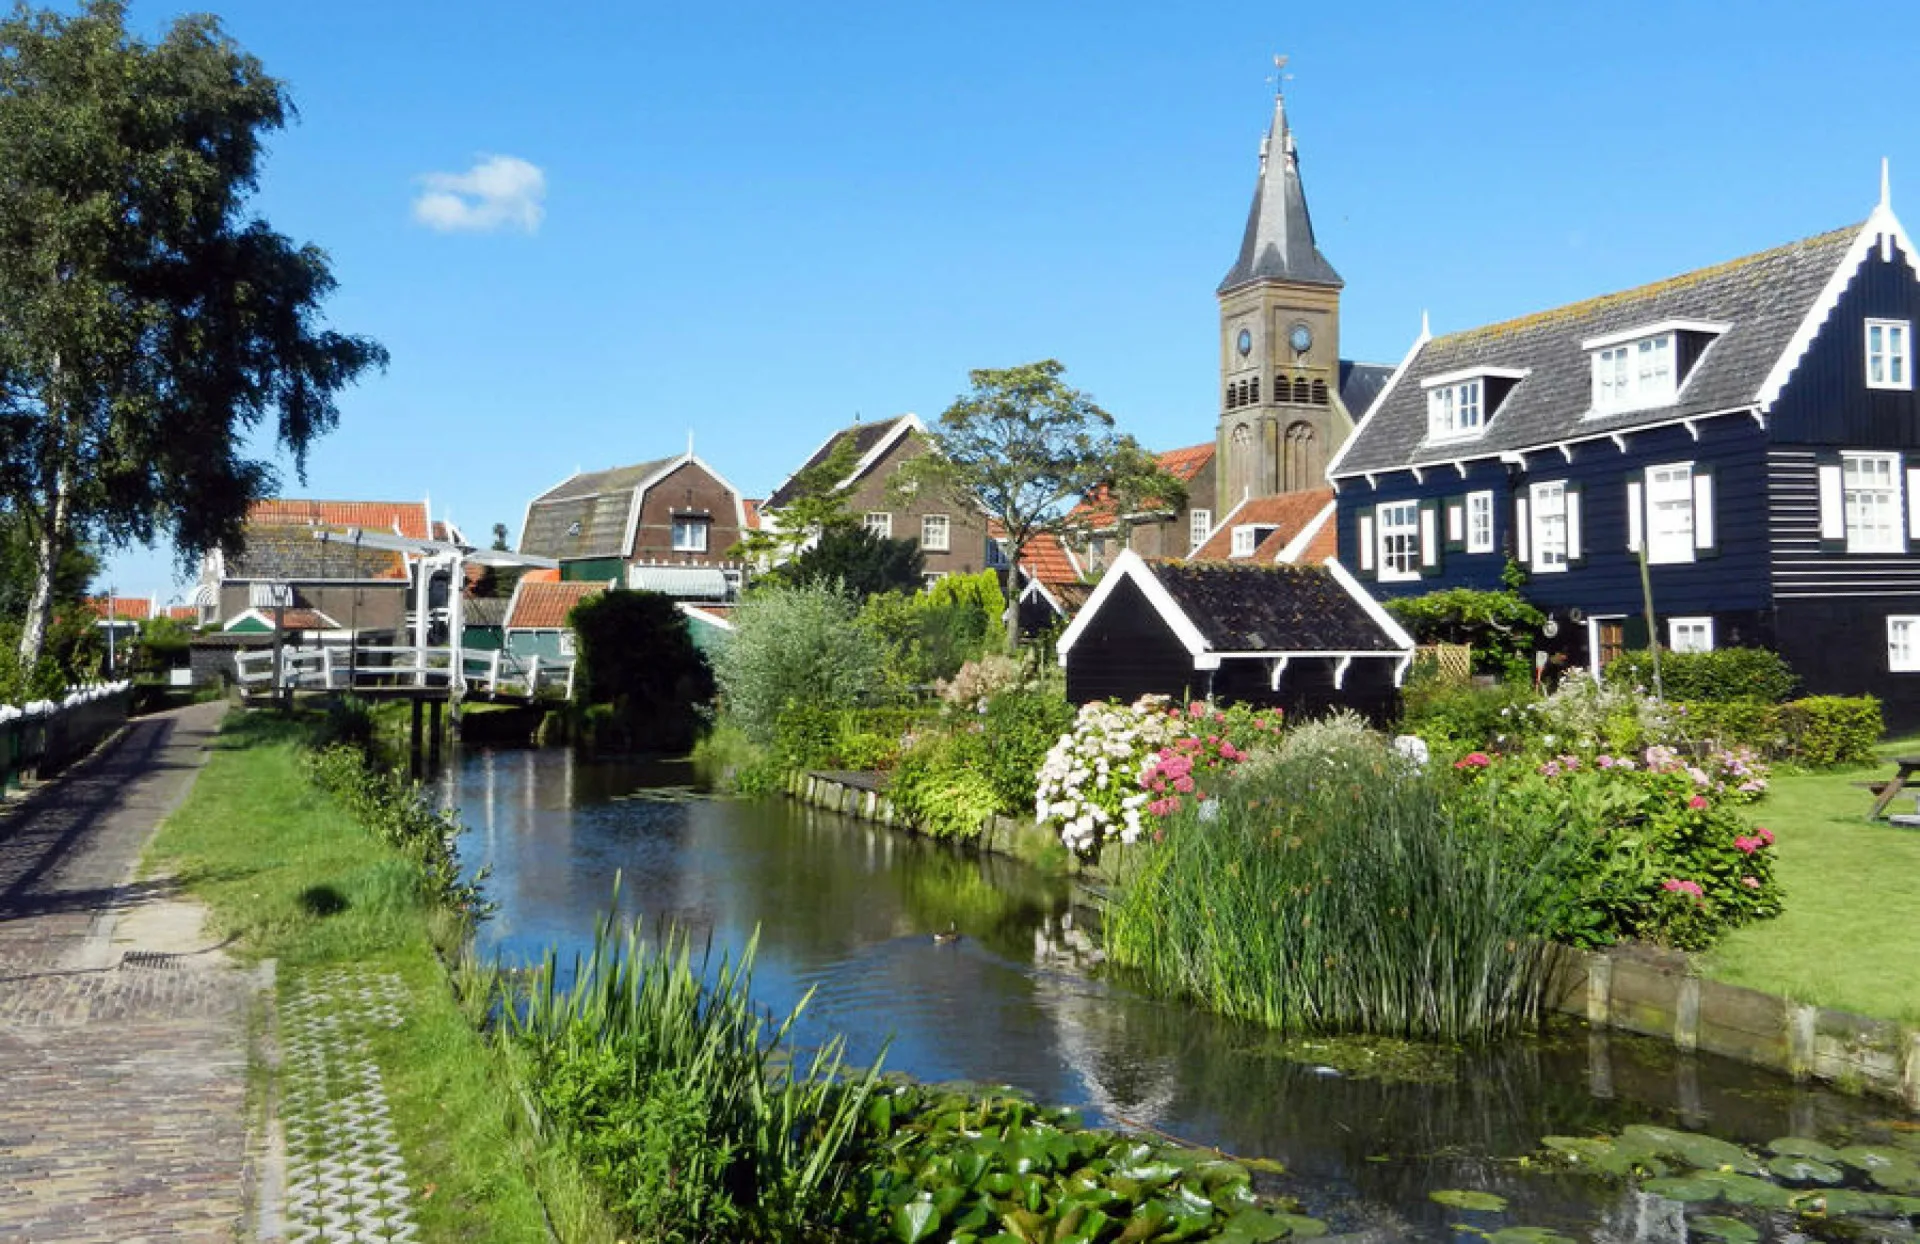 Μια ημερήσια εκδρομή στο Μάρκεν της Ολλανδίας